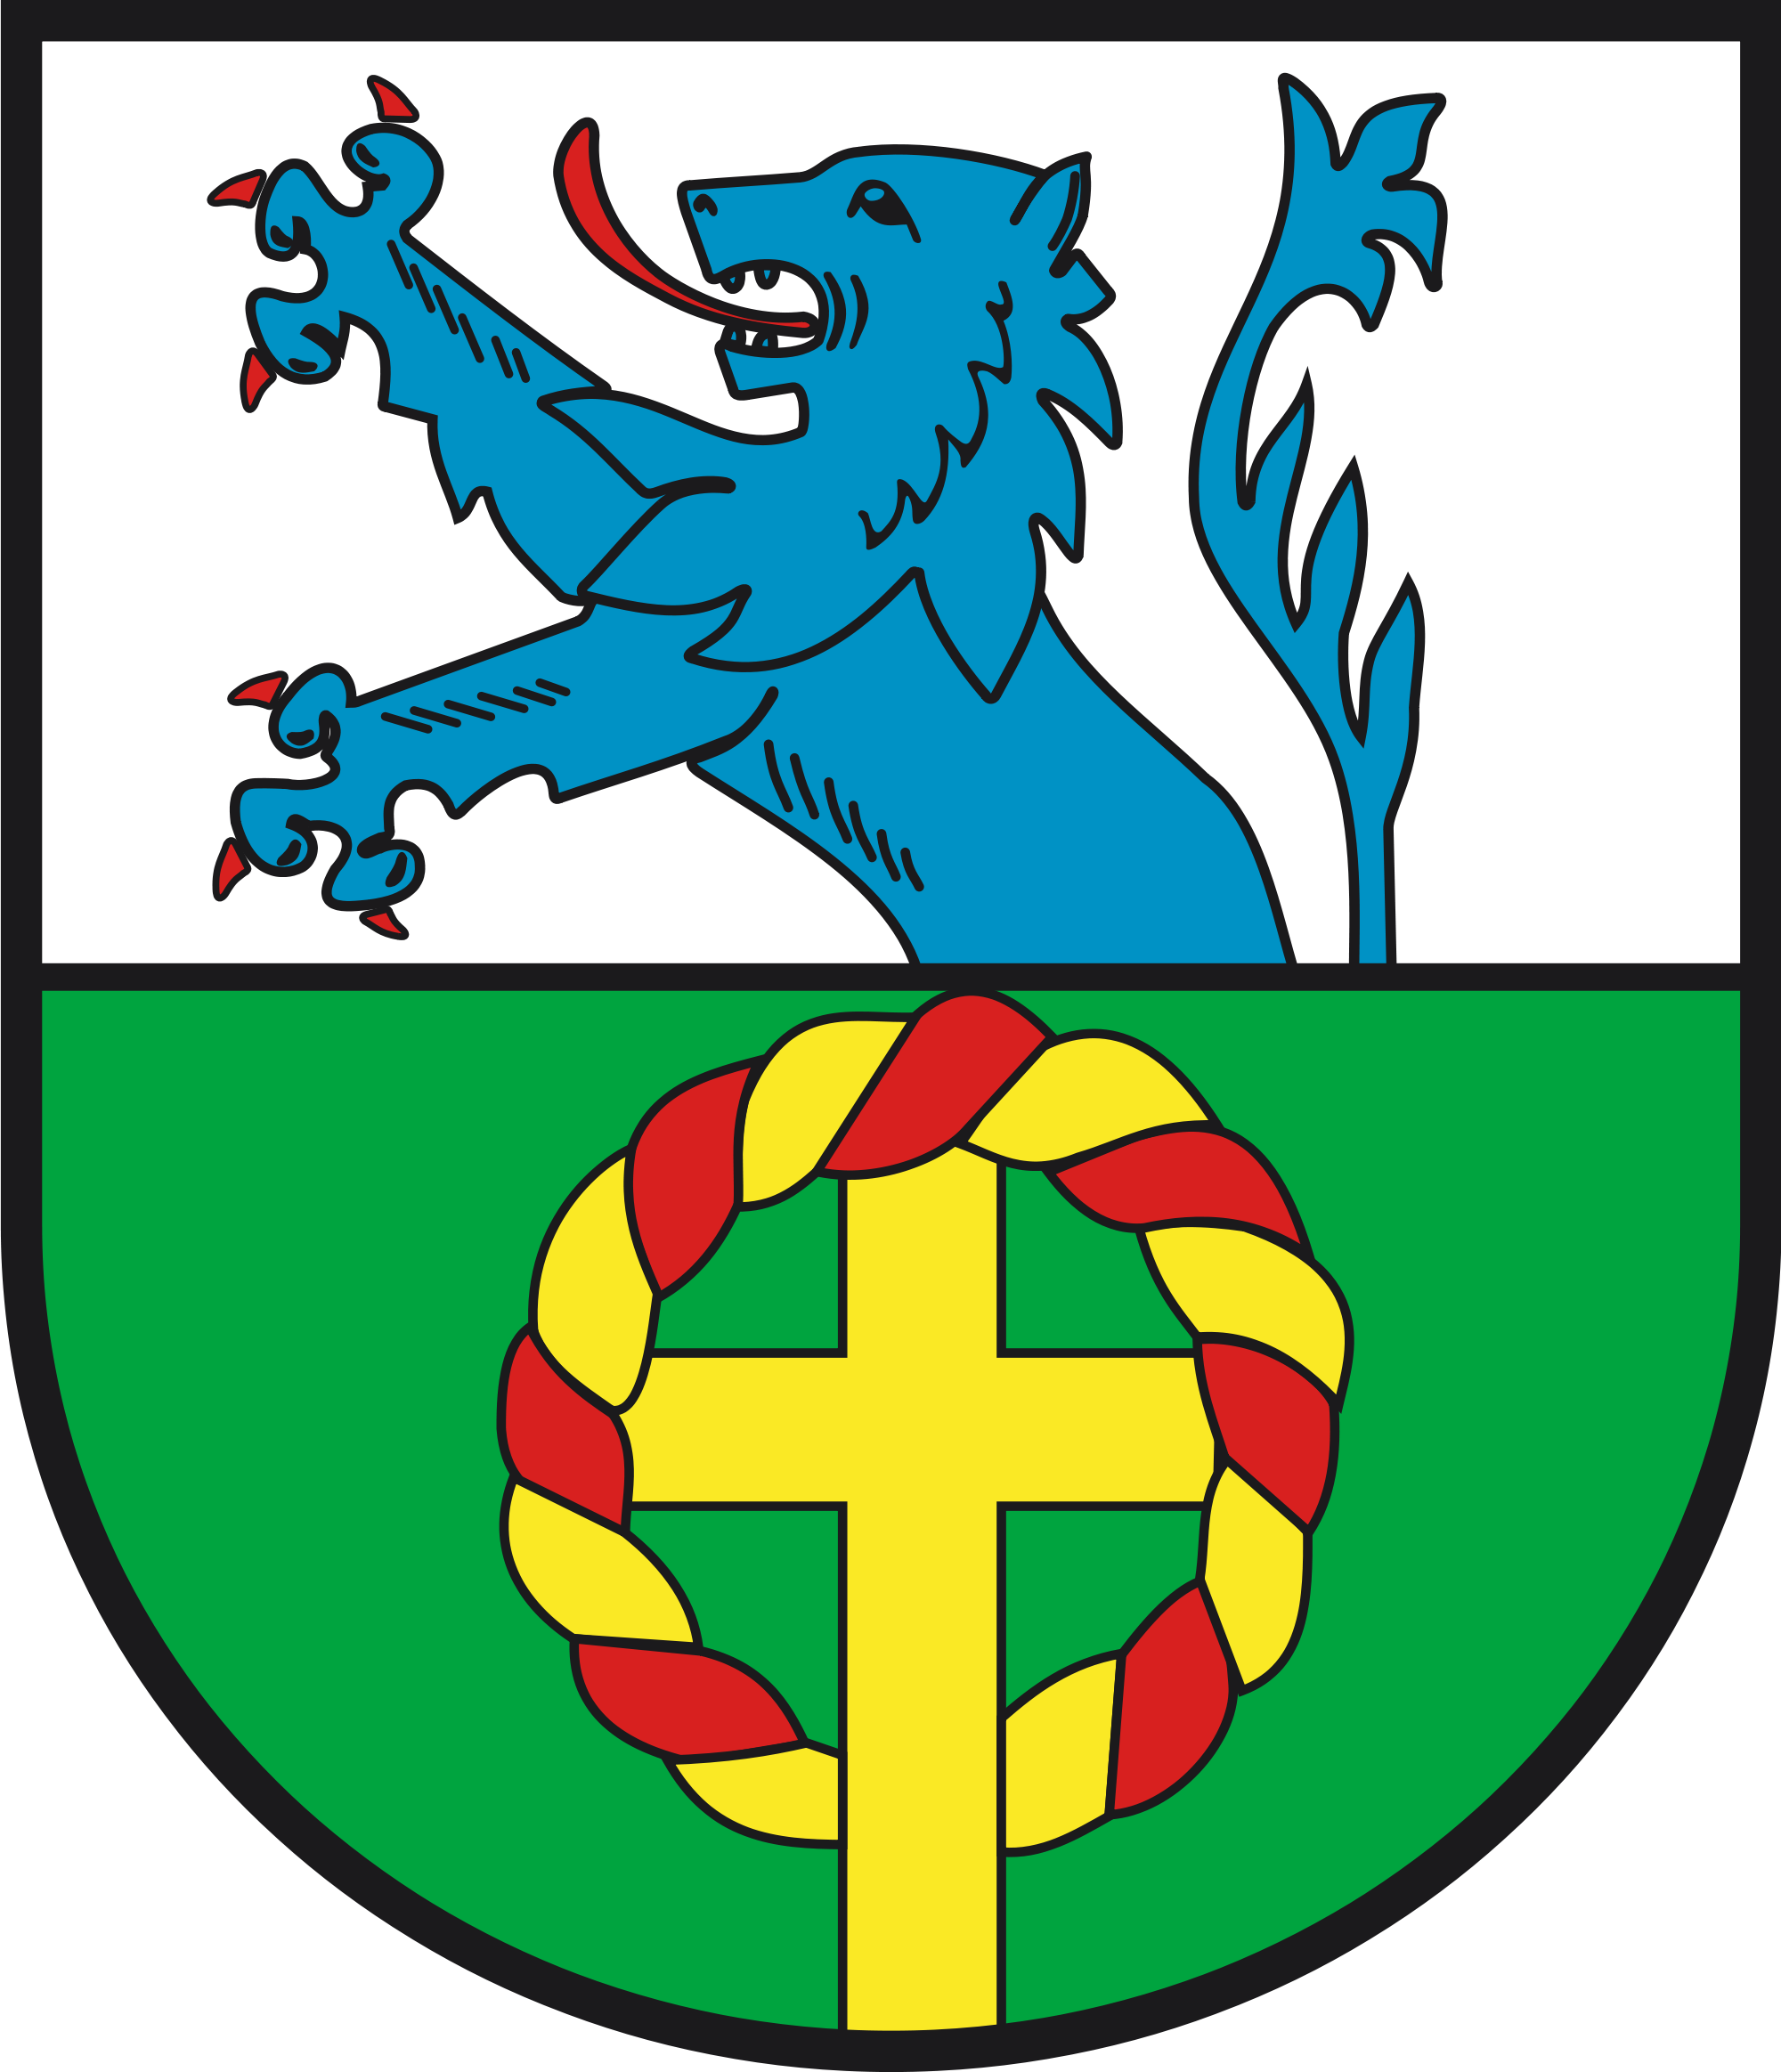 Rückweiler Wappen, blauerlöwe und Erntedankkreuz